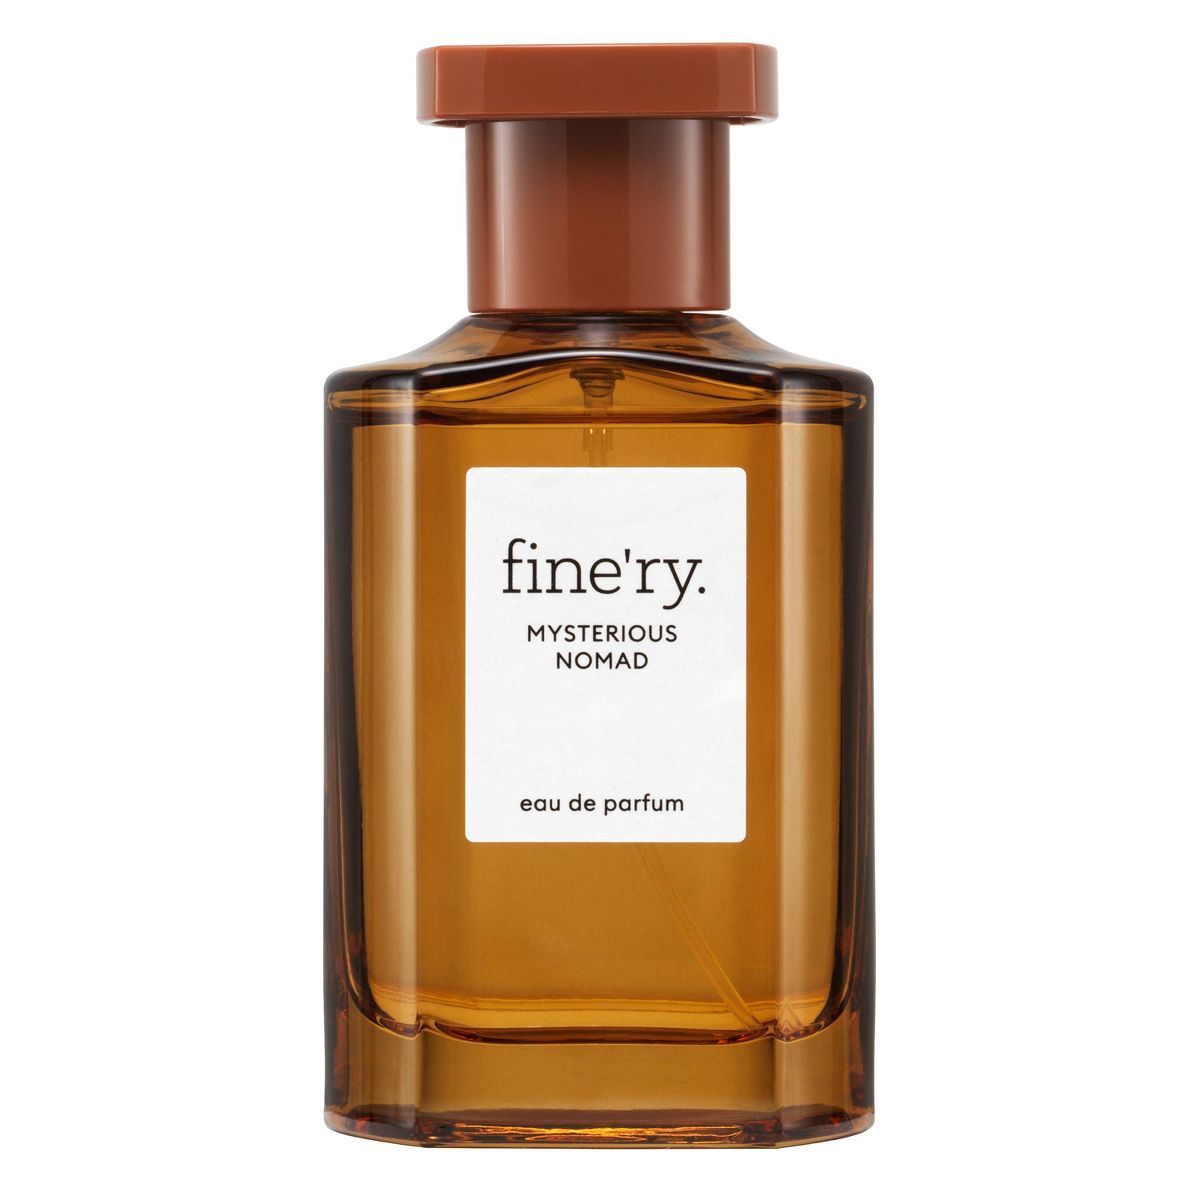 fine'ry. Women's Eau de Parfum Perfume - Mysterious Nomad - 2 fl oz | Target